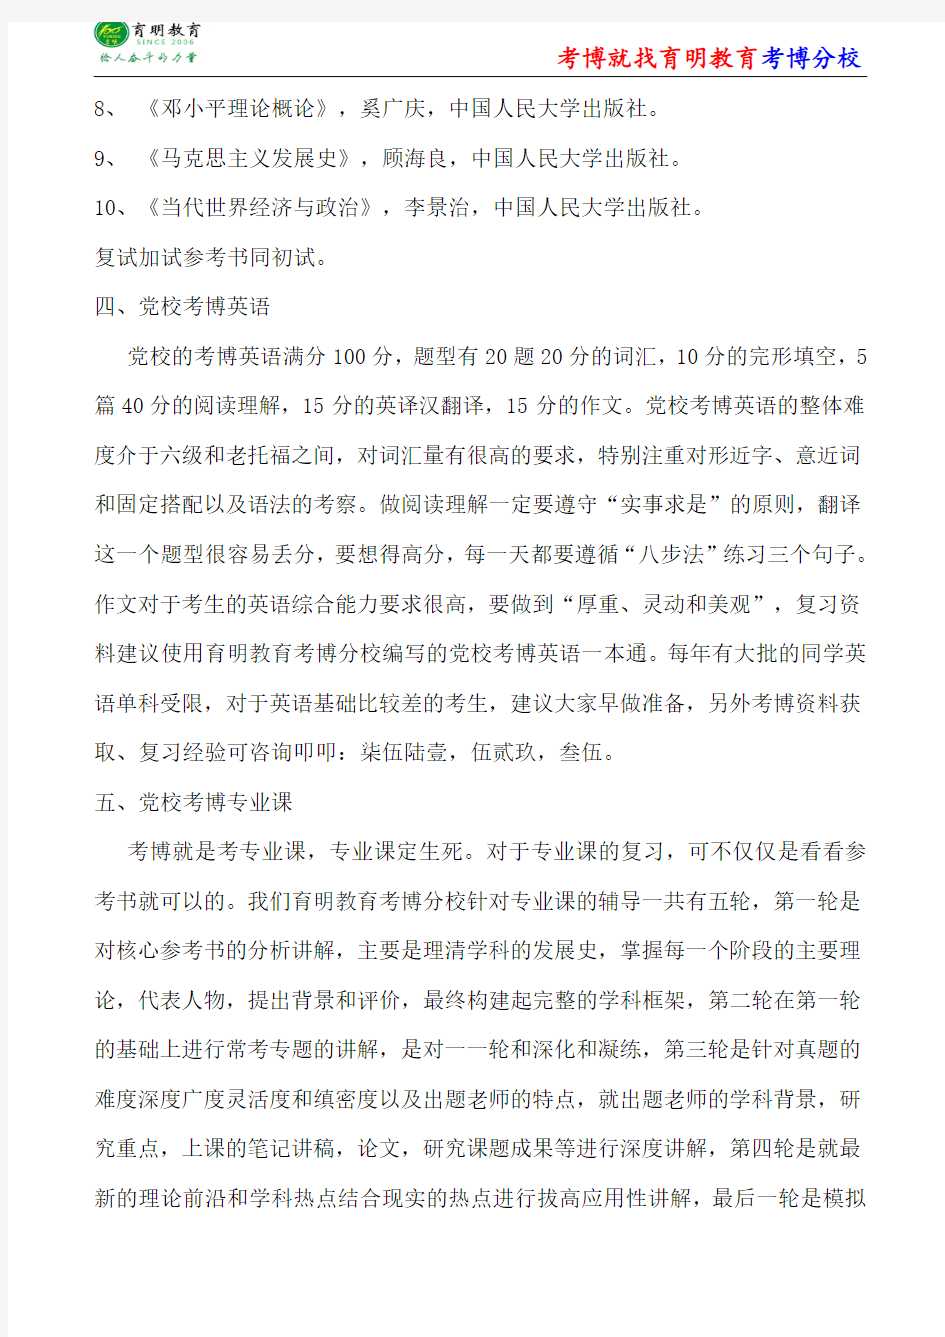 中共中央党校刘悦斌中国近现代史考博参考书-考博笔记资料-考博辅导